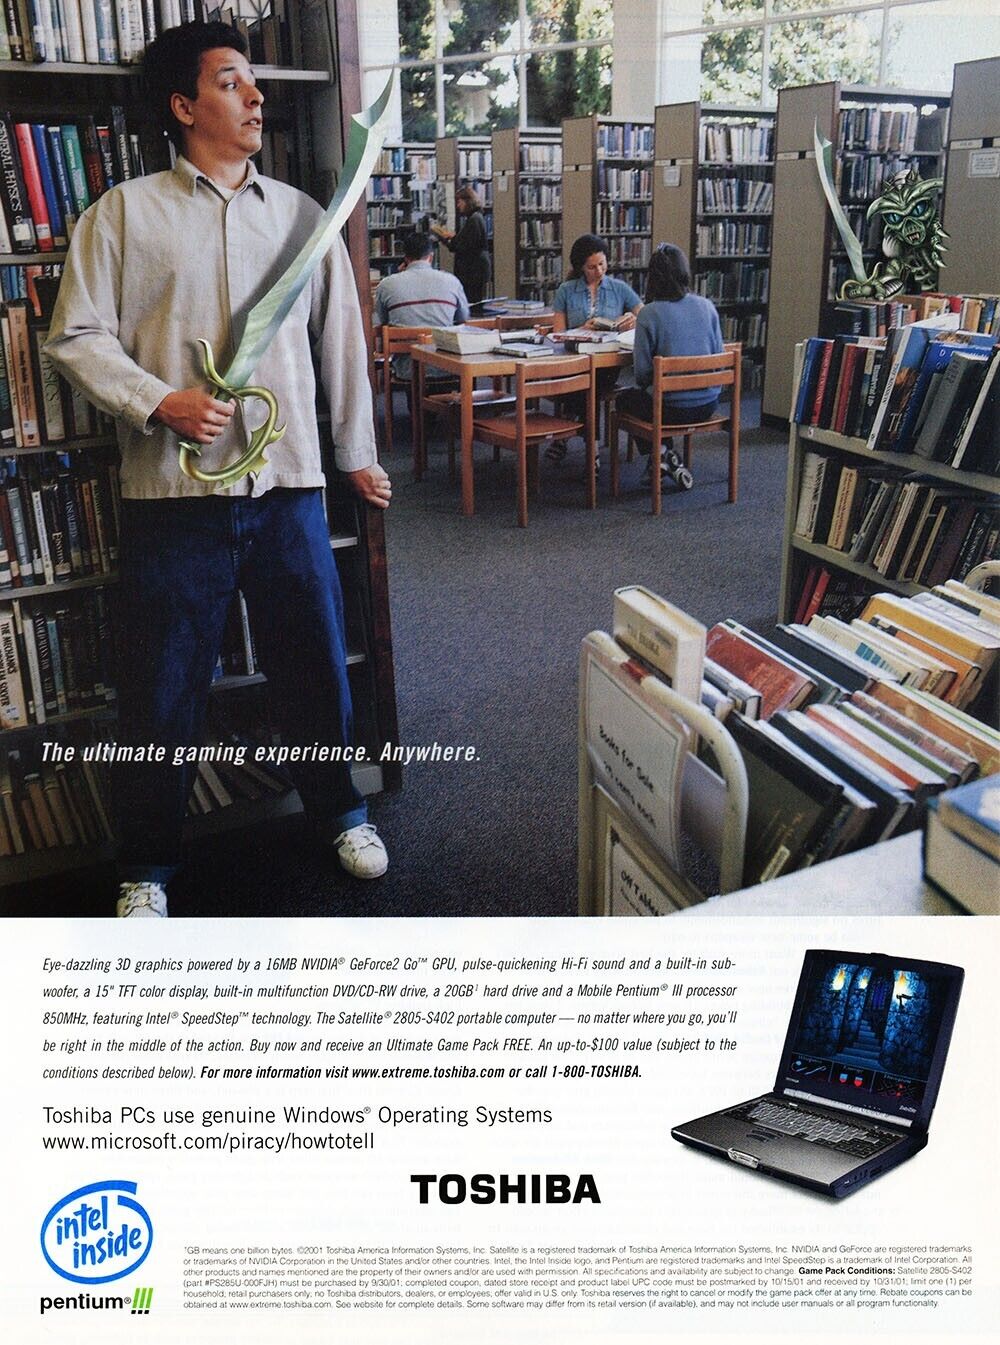 Toshiba Satellite 2805 Gaming Laptop Original 2002 Ad Authentic Funny Promo